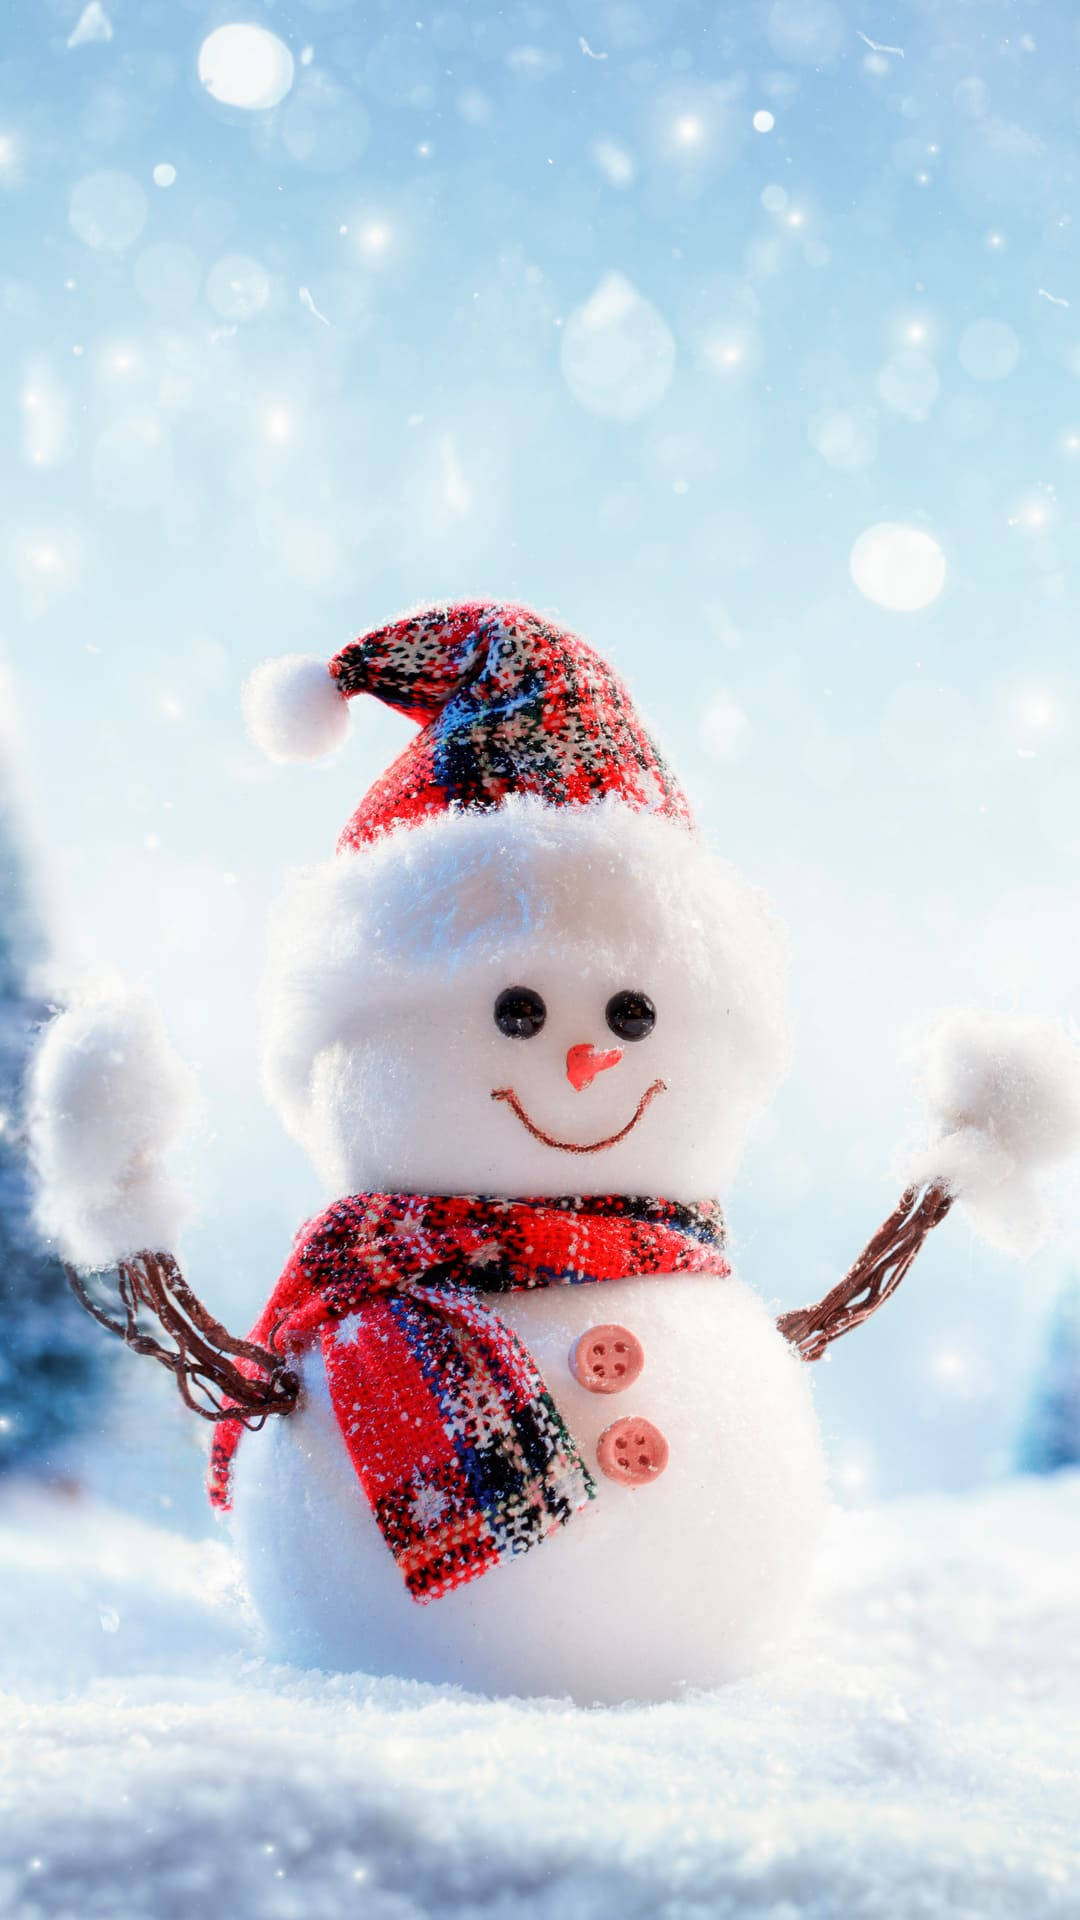 Cute Snowman Winter iPhone Wallpaper